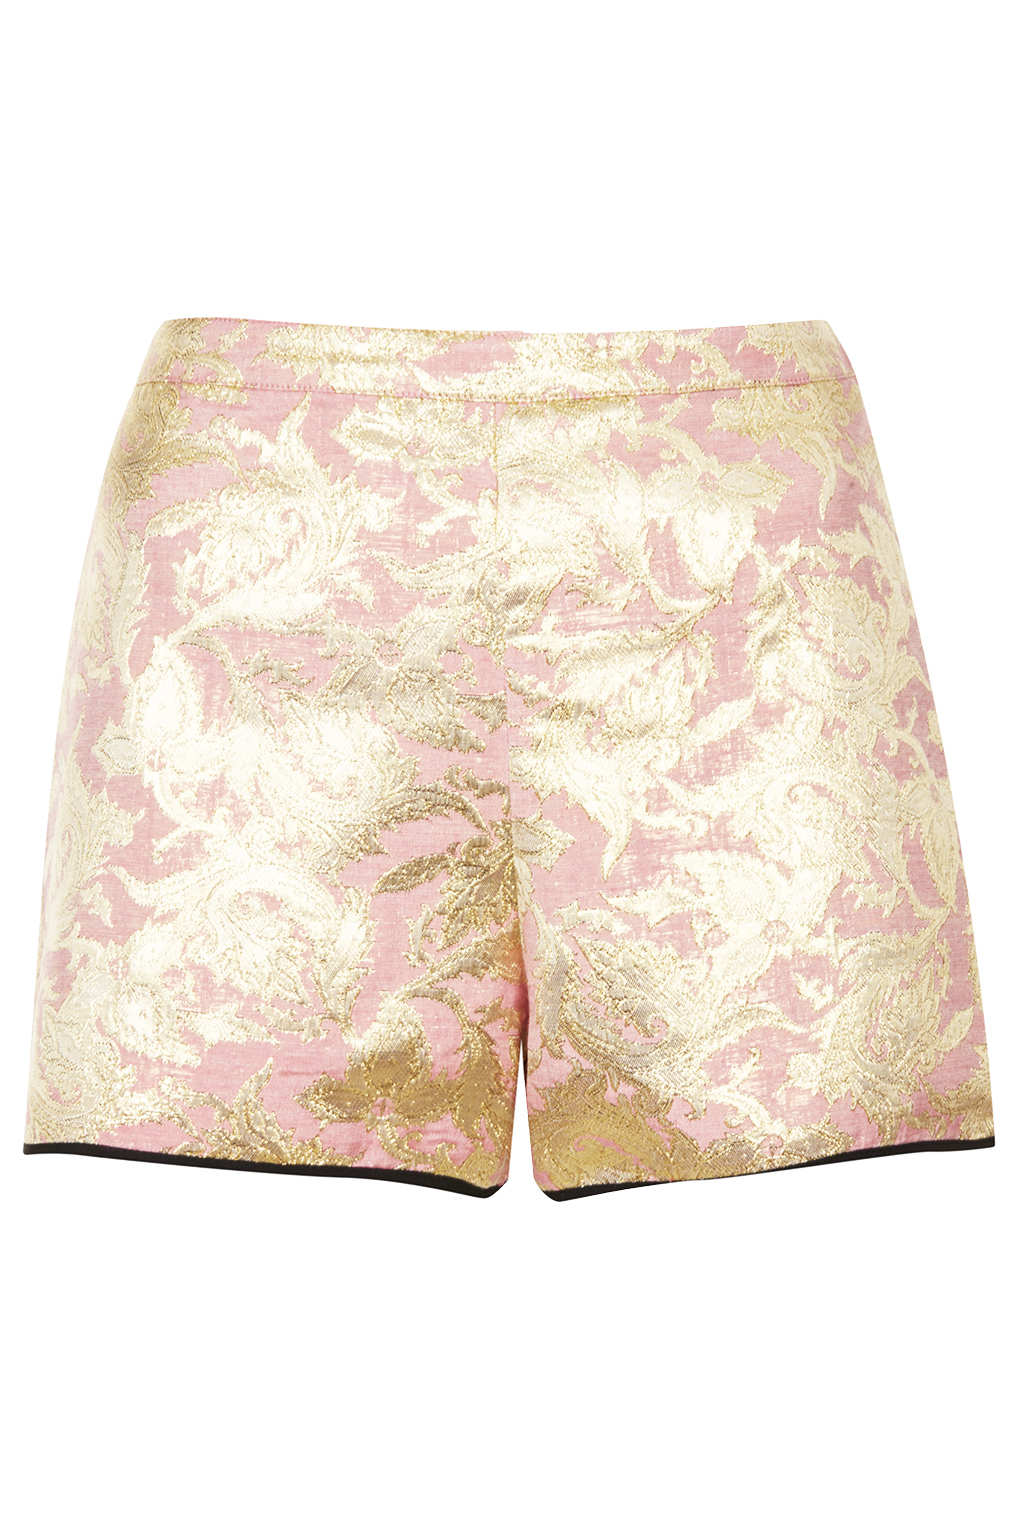 TOPSHOP Pink Metallic Jacquard Shorts - Lyst